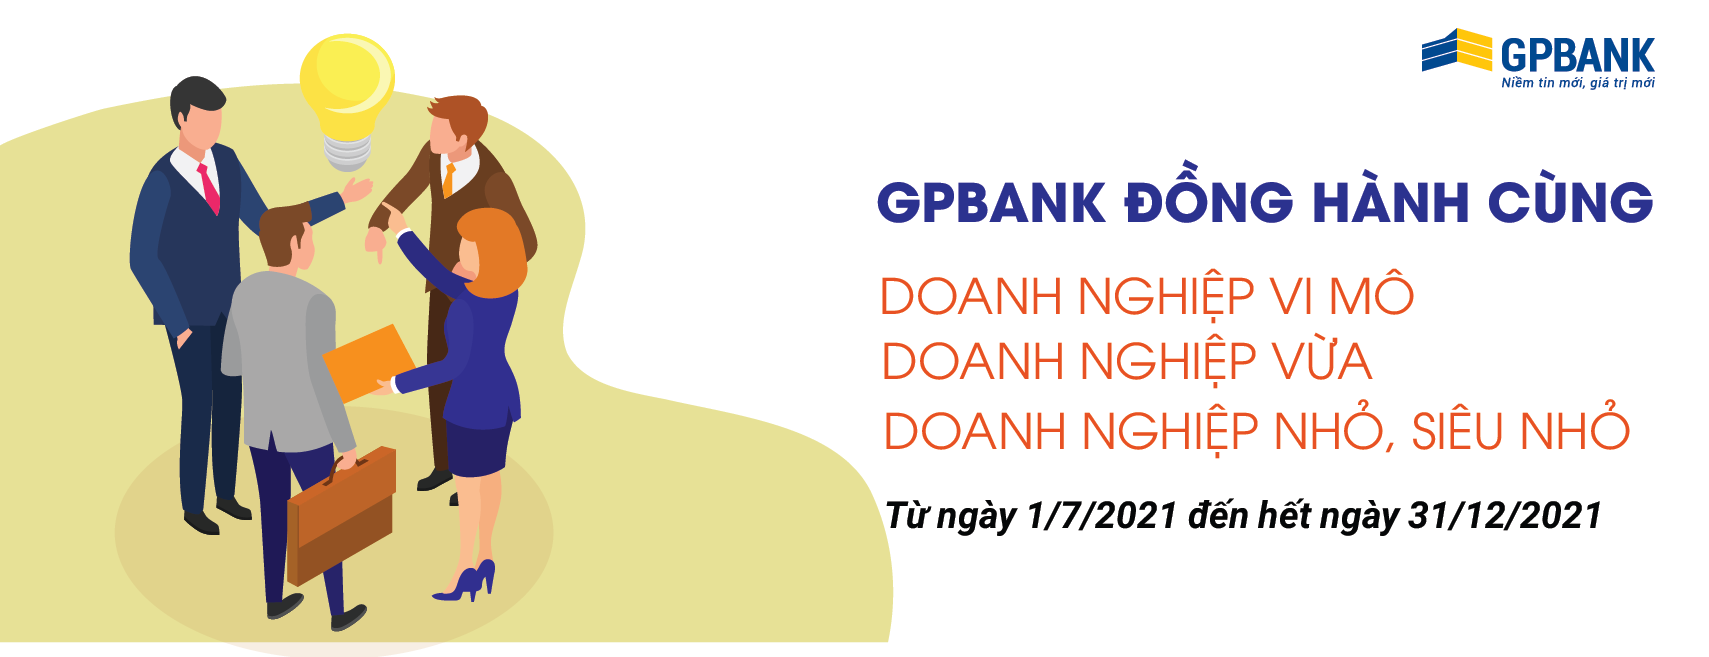 “GPBank đồng hành cùng khách hàng”: Giải ngân nhanh chóng – Vay vốn dễ dàng